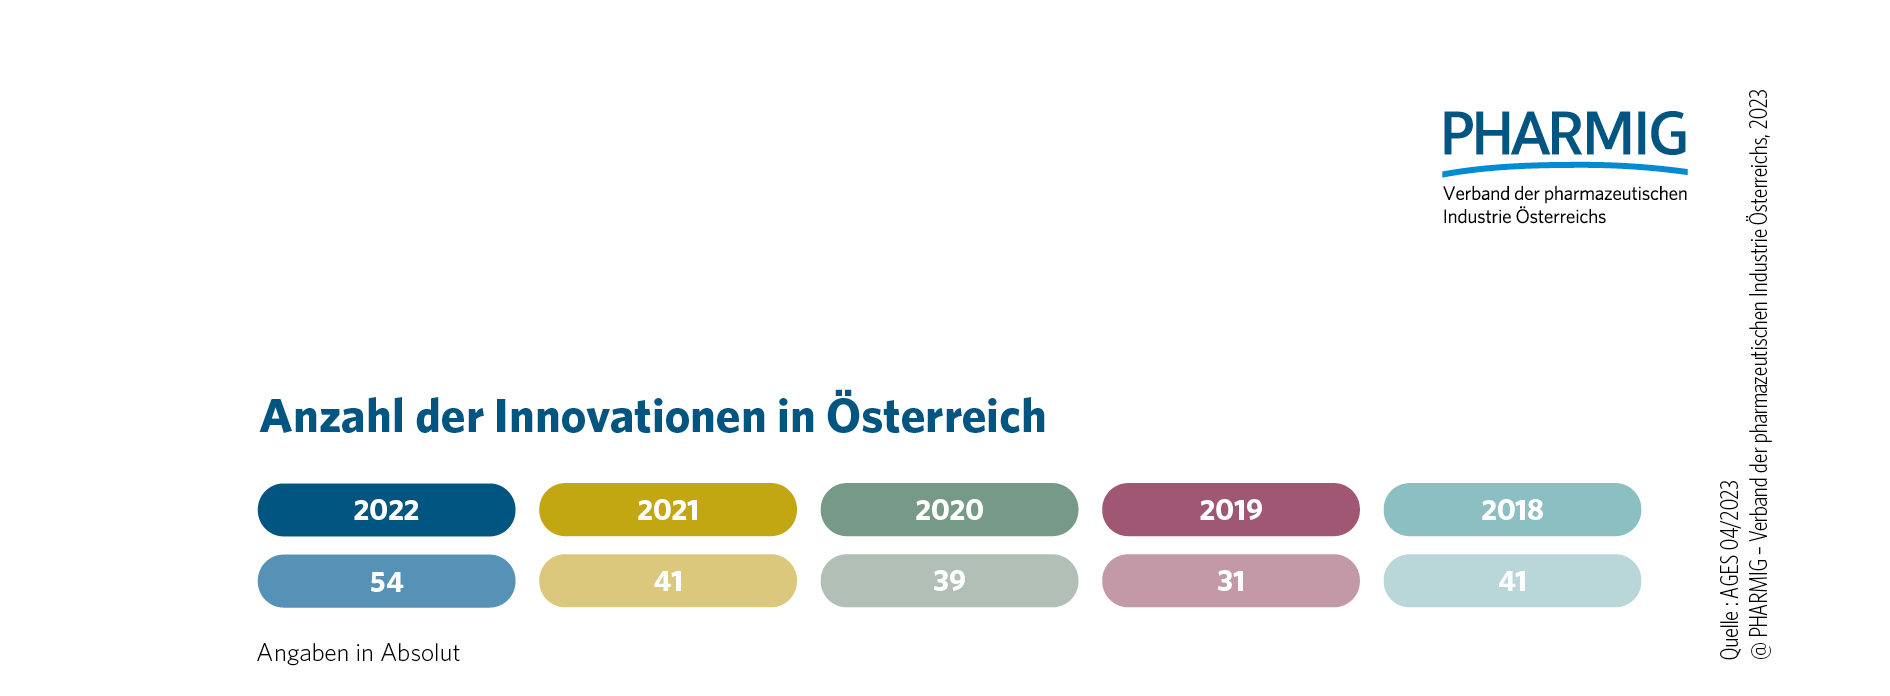 © 4.5 Arzneimittelinnovationen in Österreich (2018 - 2022)